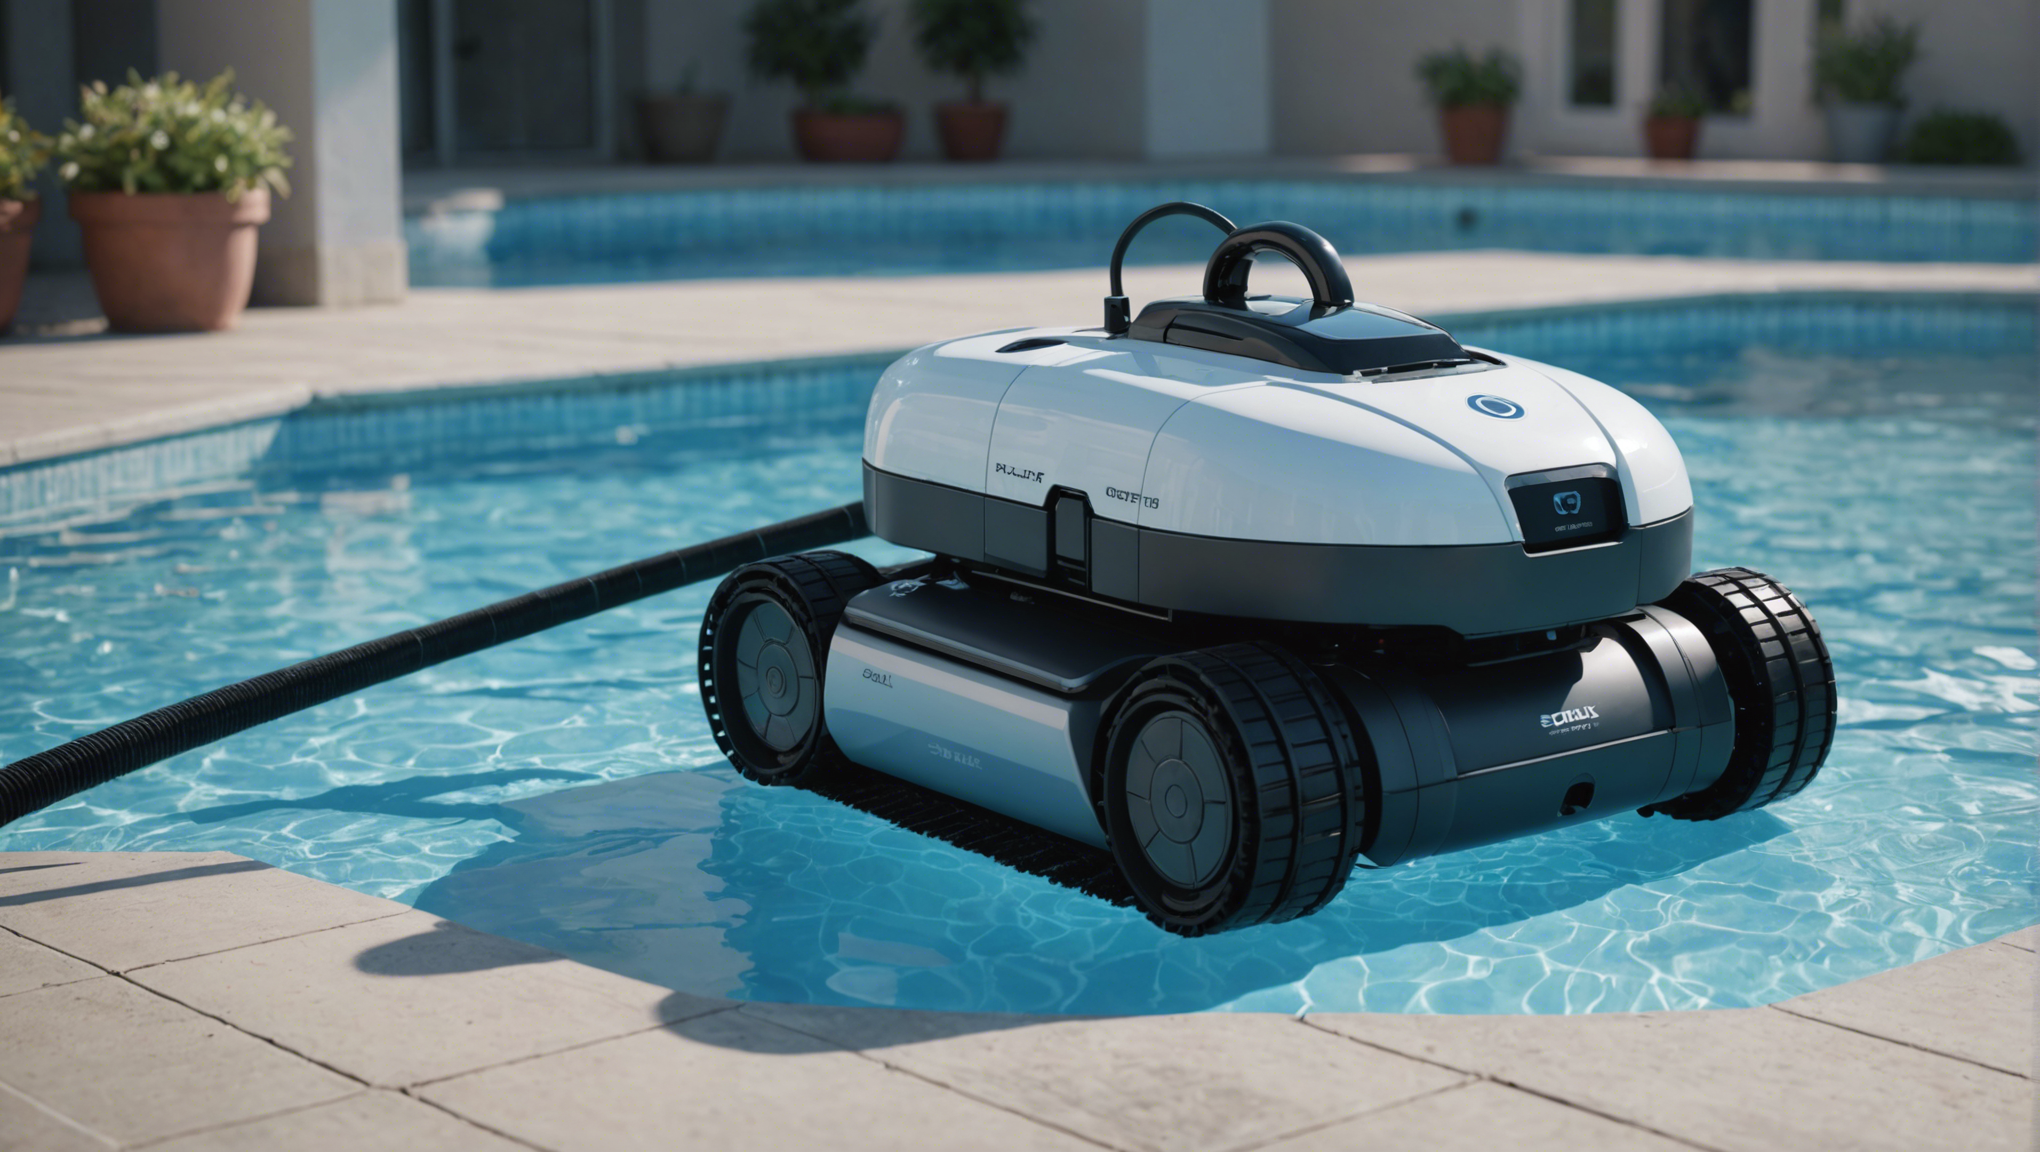 découvrez nos conseils pour optimiser l'utilisation d'un robot nettoyeur de piscine et profiter d'une piscine propre et entretenue sans effort.